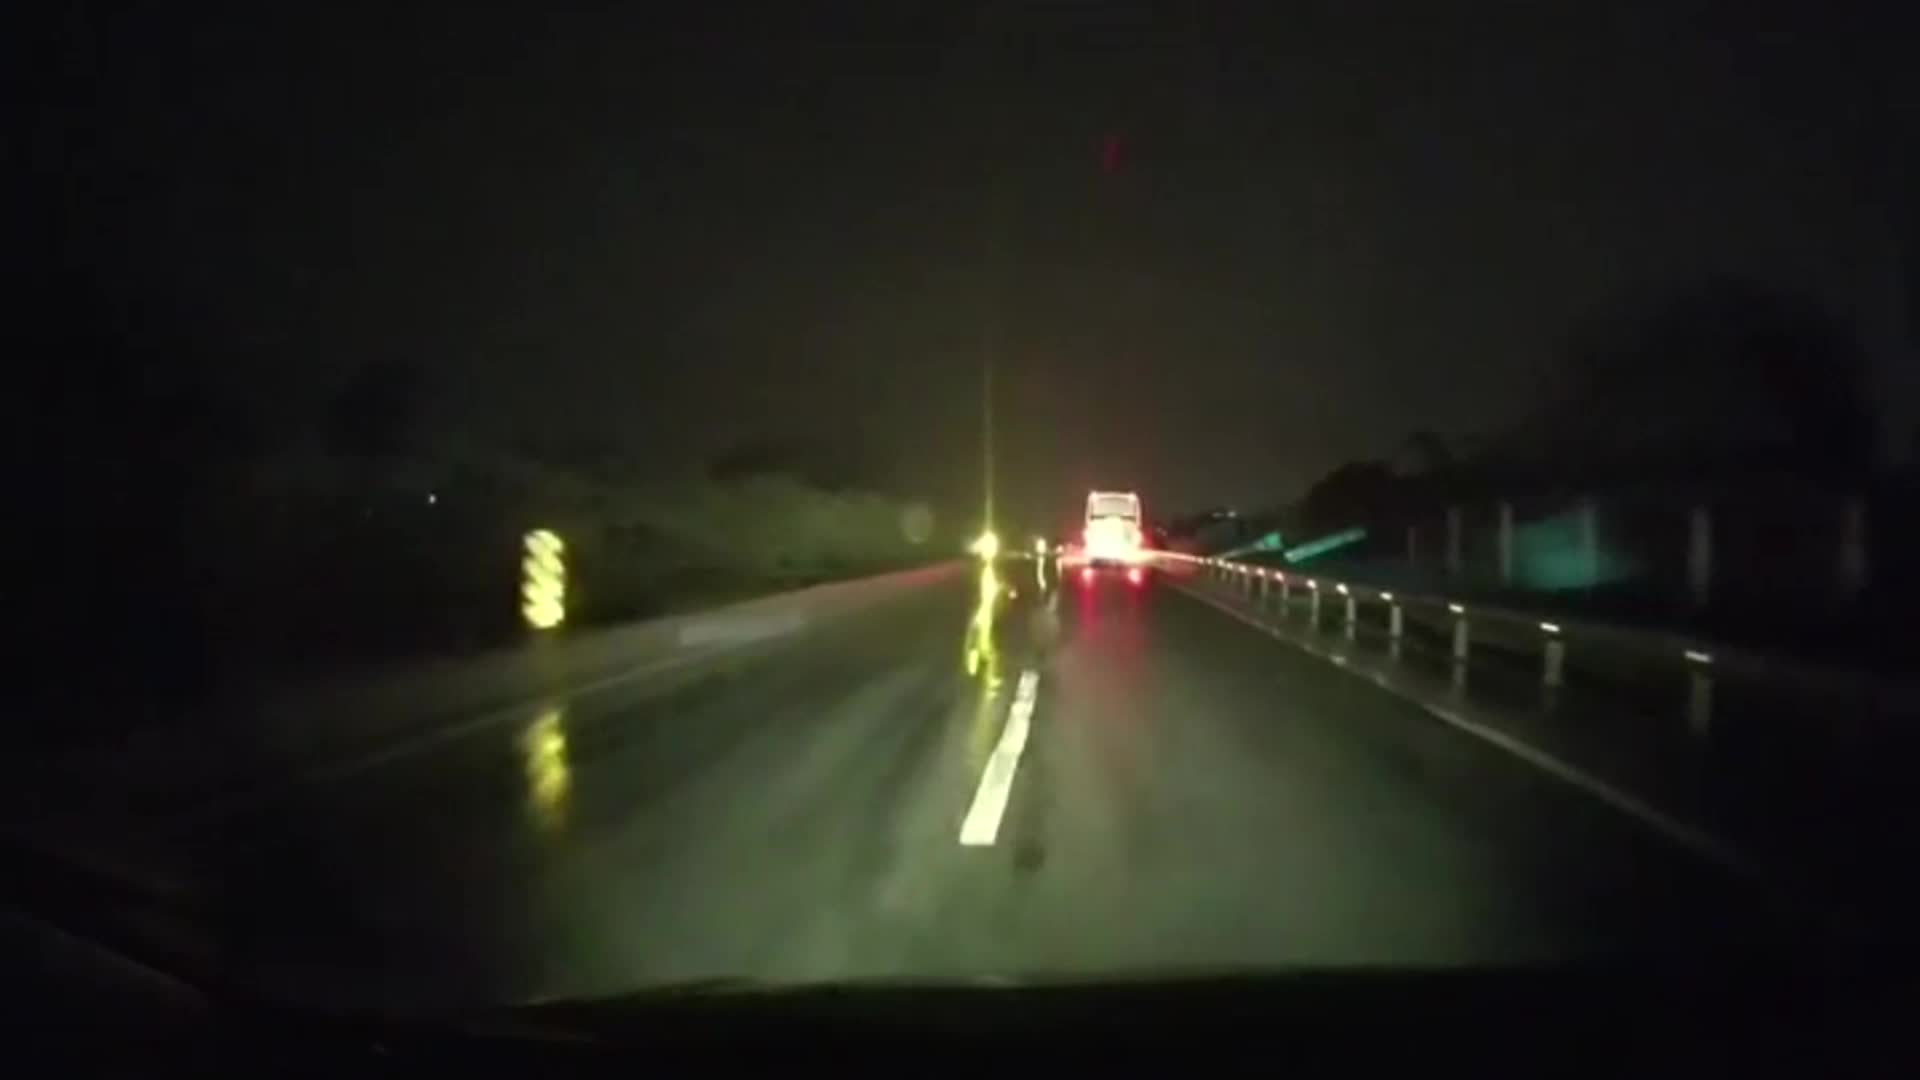 Tài xế liều lĩnh đỗ ô tô ngang đường, chặn đầu xe khác trên cao tốc